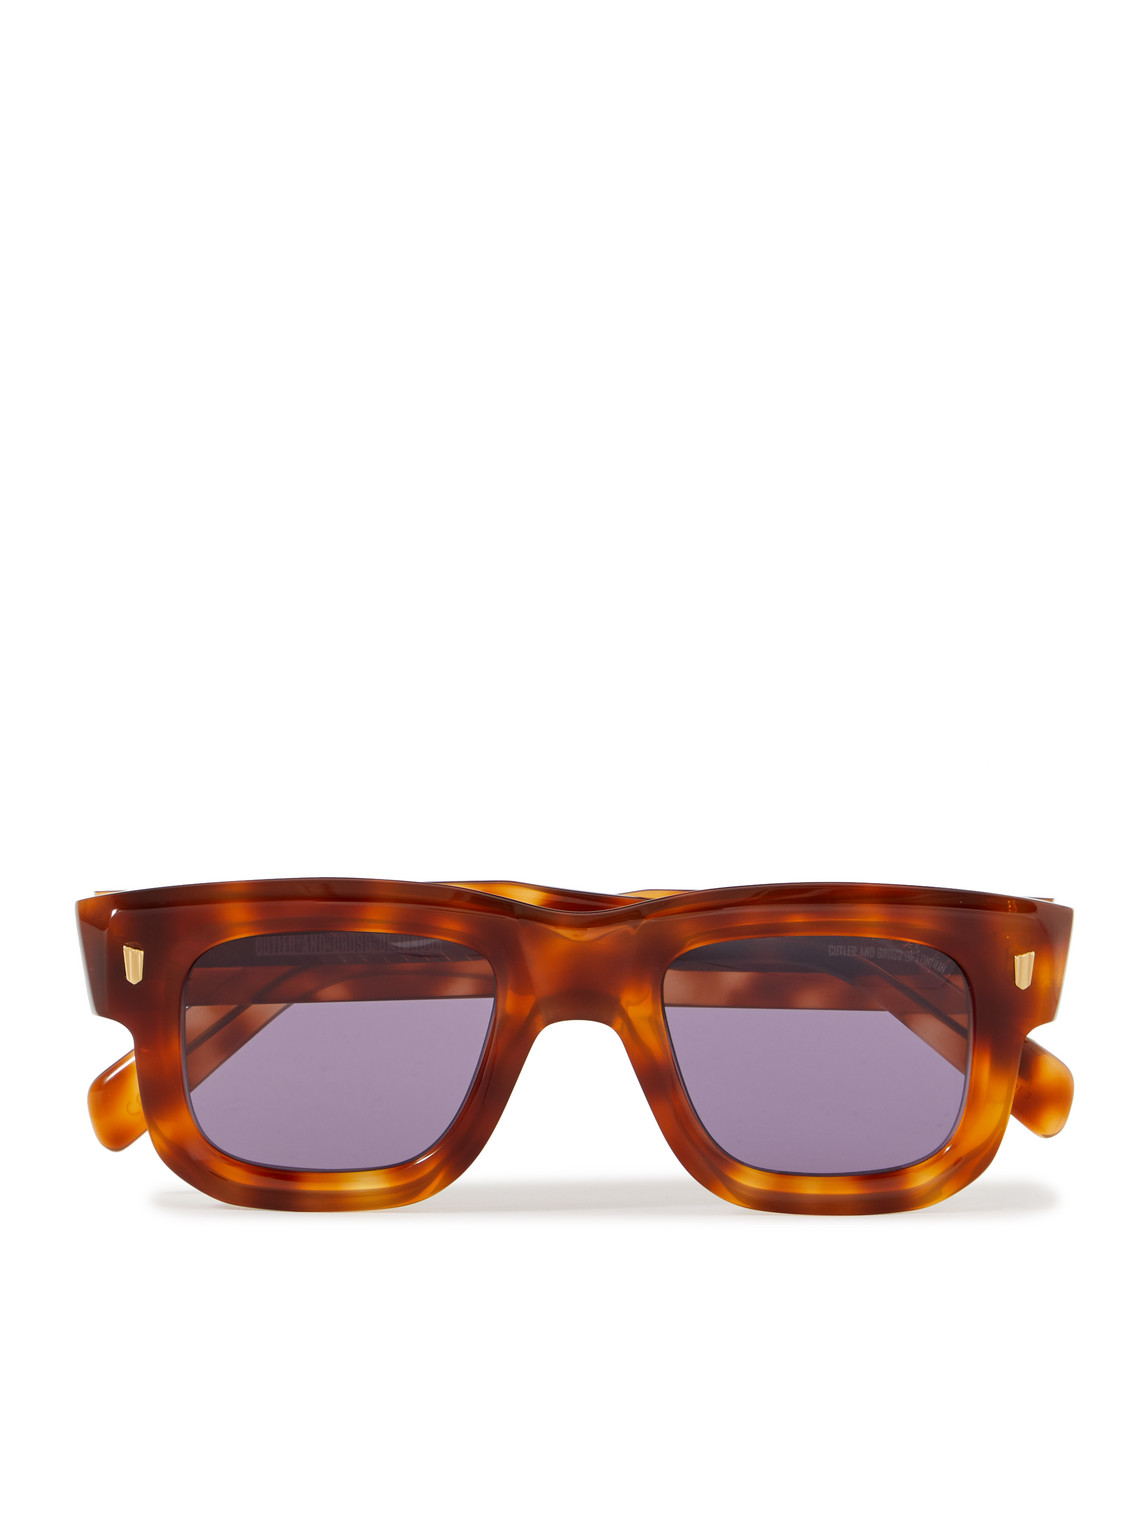 Cutler And Gross 1402 Square-frame Tortoiseshell Acetate Sunglasses